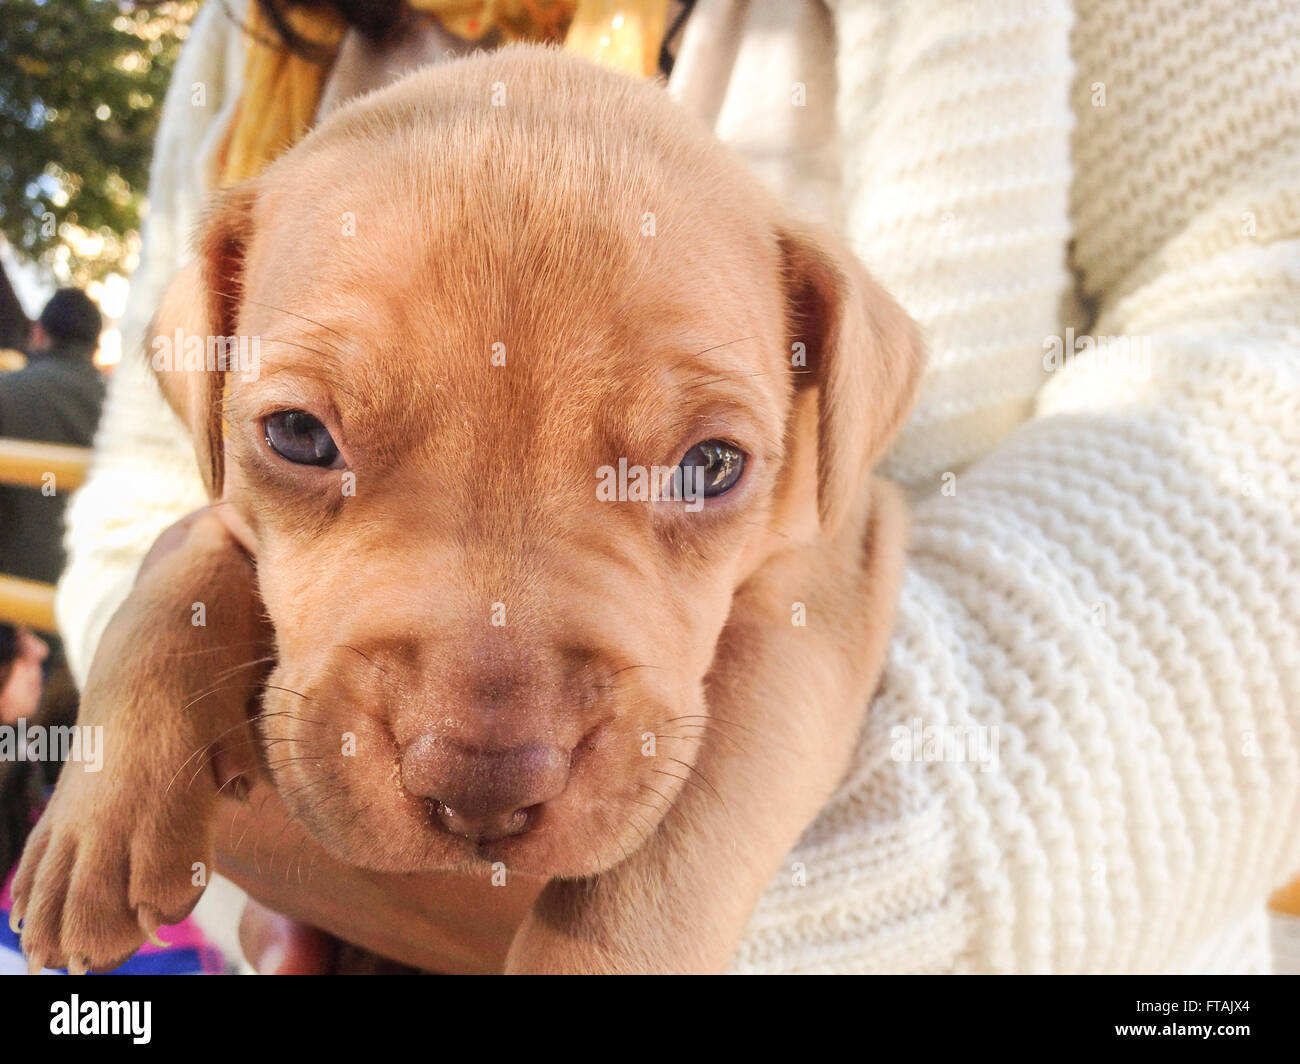 Cucciolo di cane nel suo allevatore di braccia guardando nella telecamera. Ritratto all'aperto Foto Stock